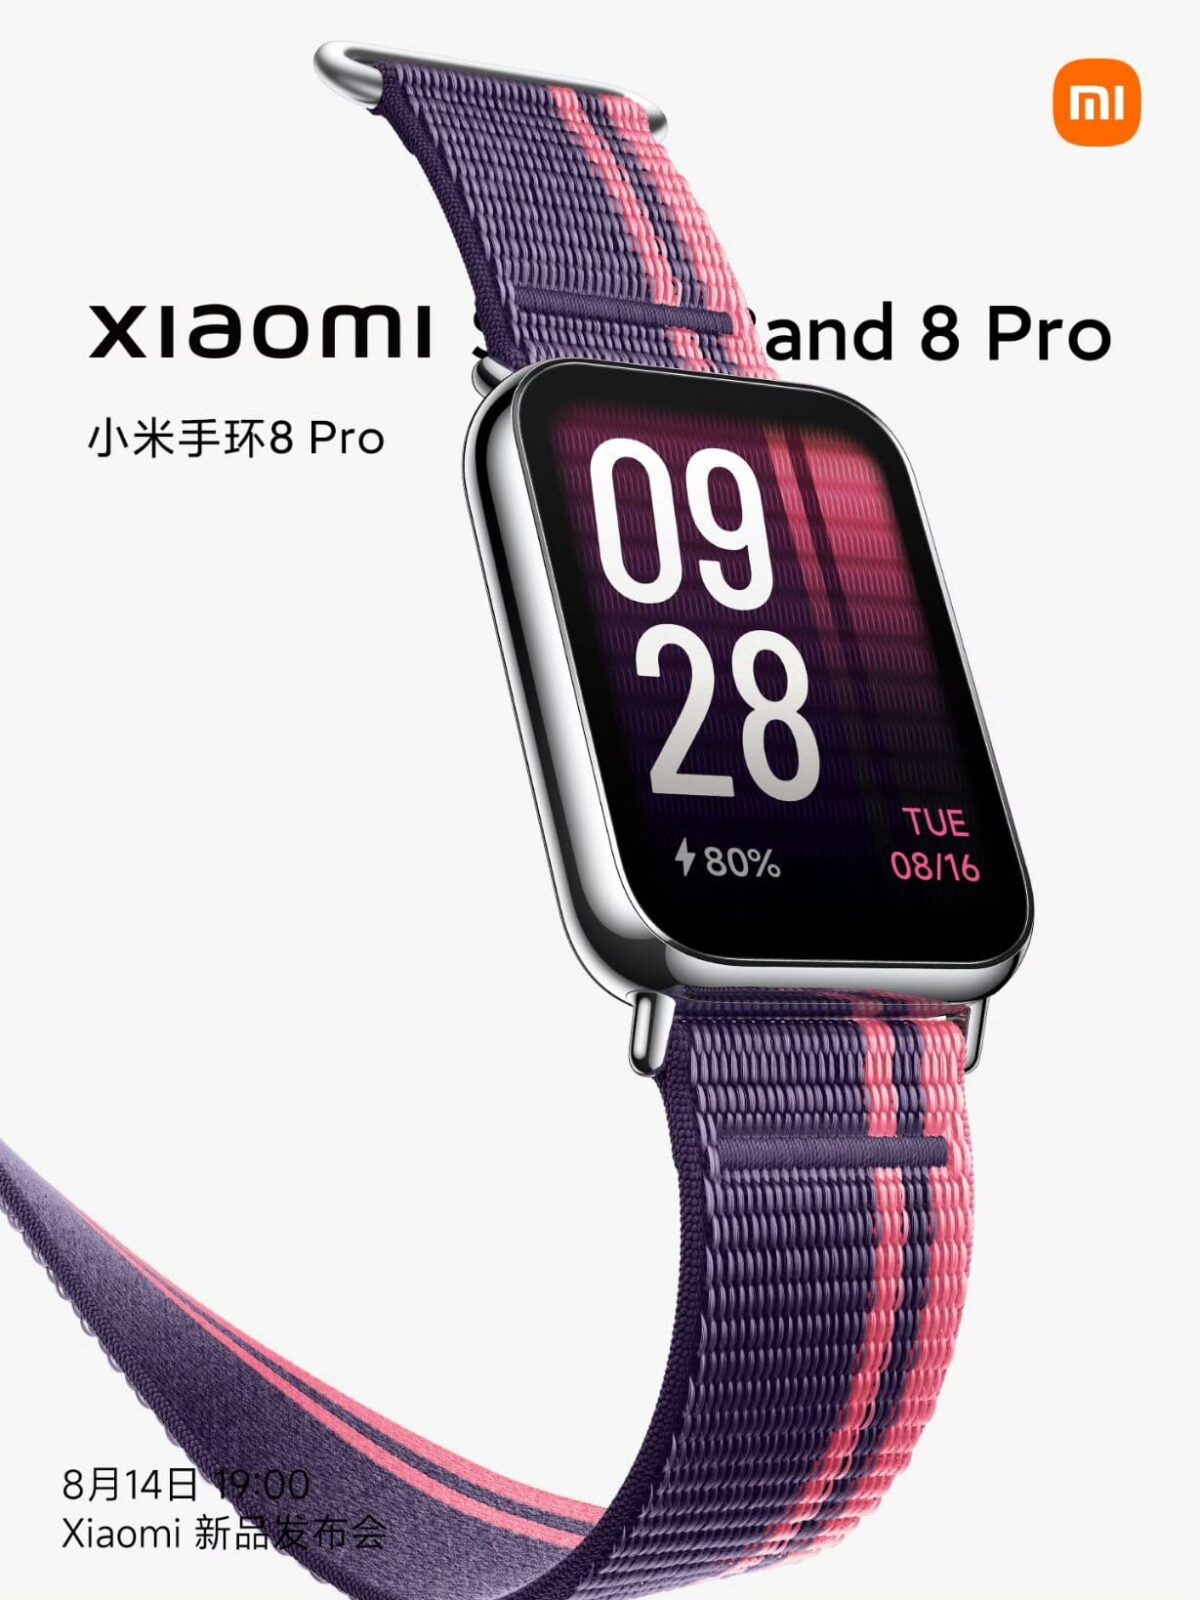 Xiaomi a présenté sa gigantesque tablette Pad 6 Max et son bracelet Smart  Band 8 Pro